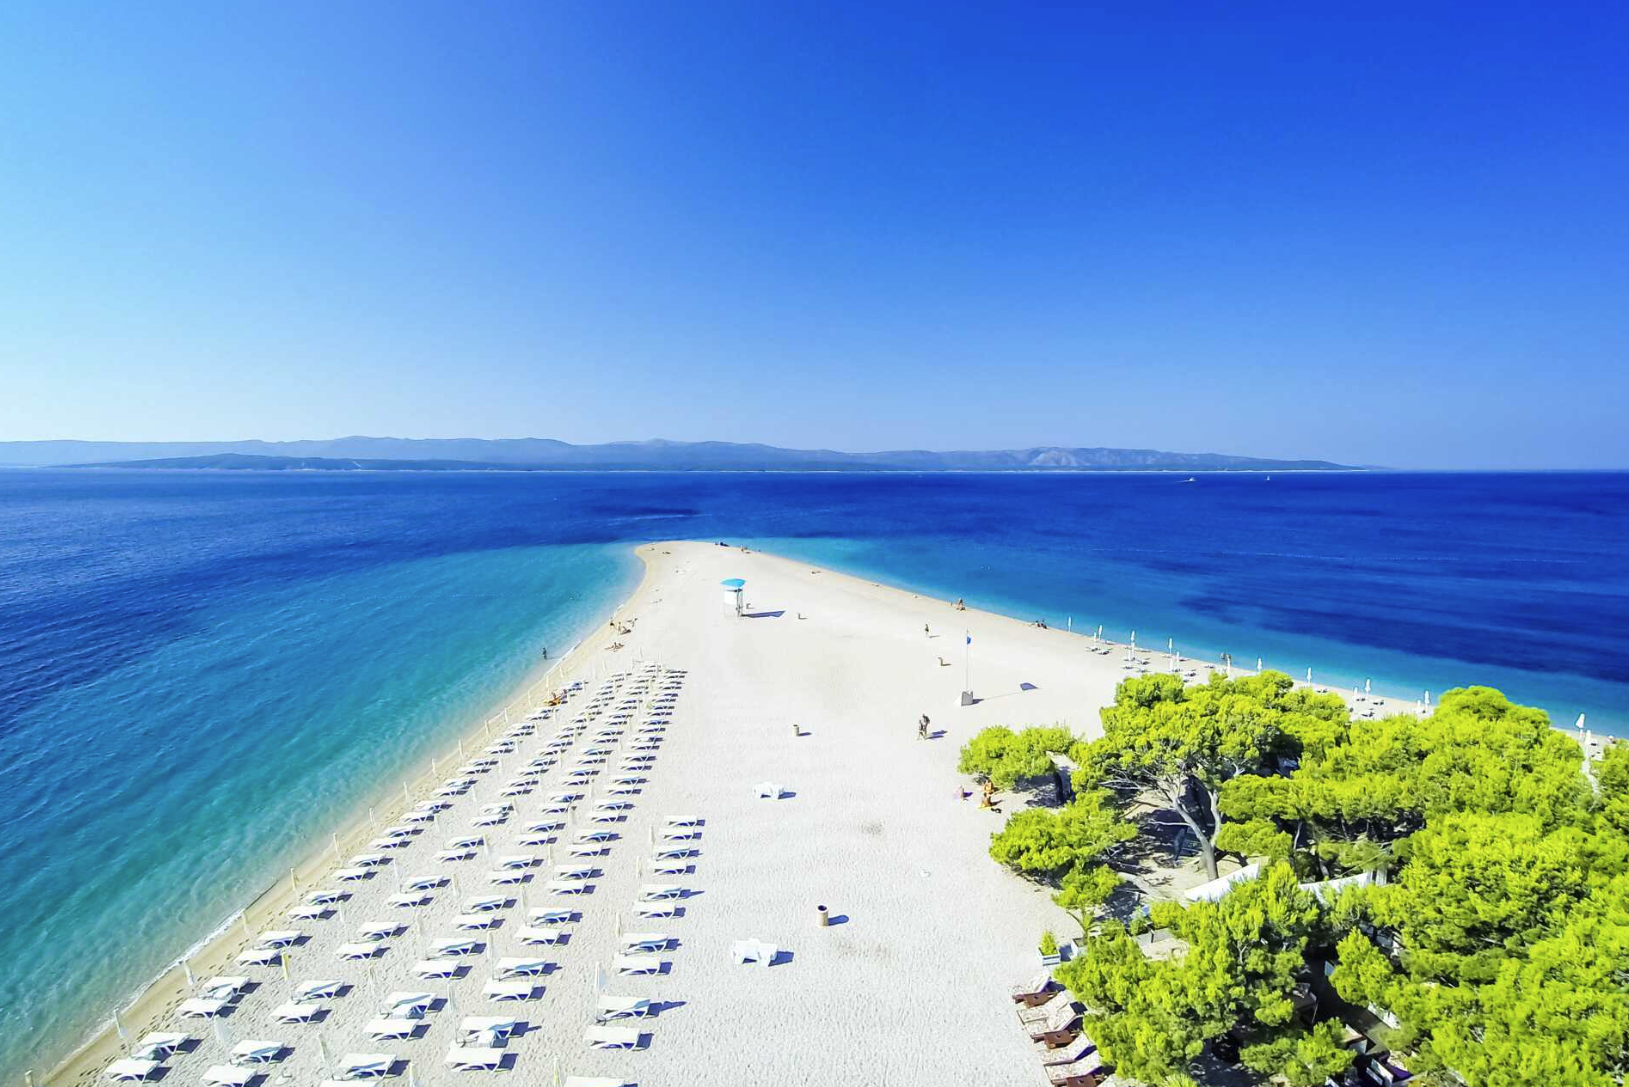 Billig sommerferie til Kroatia